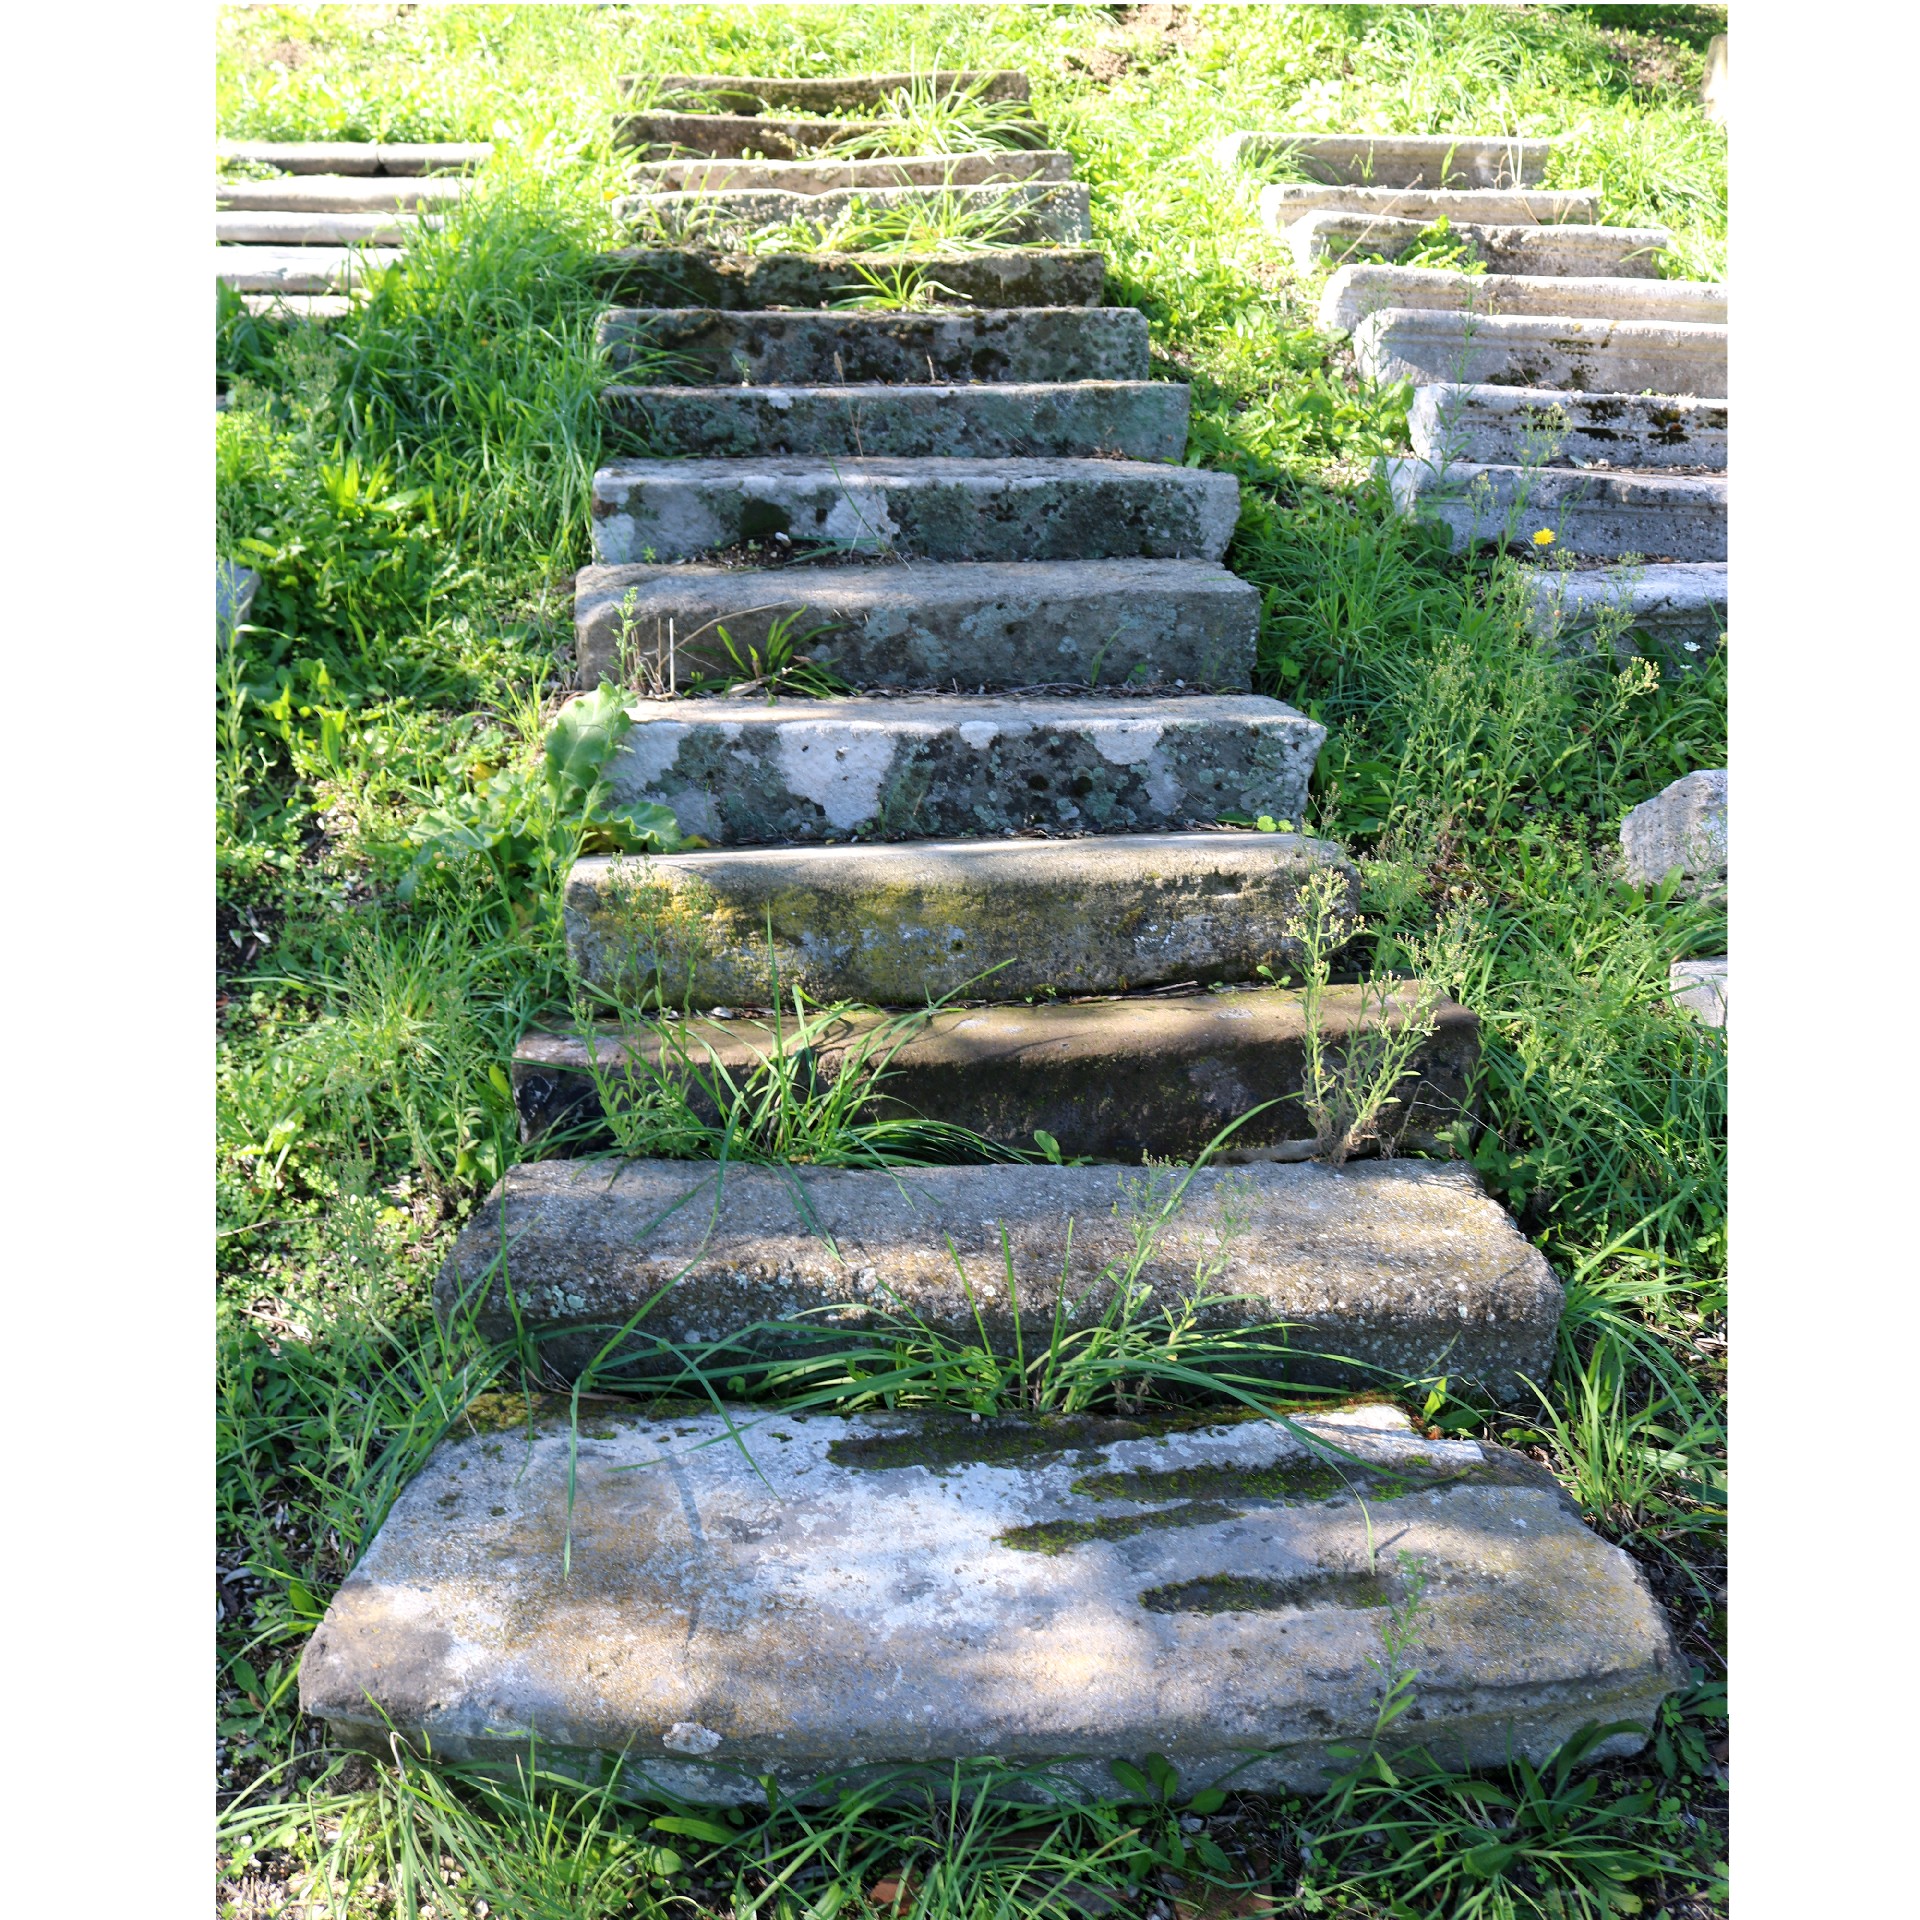 Antichi scalini in pietra - Scale Antiche - Architettura - Prodotti - Antichità Fiorillo